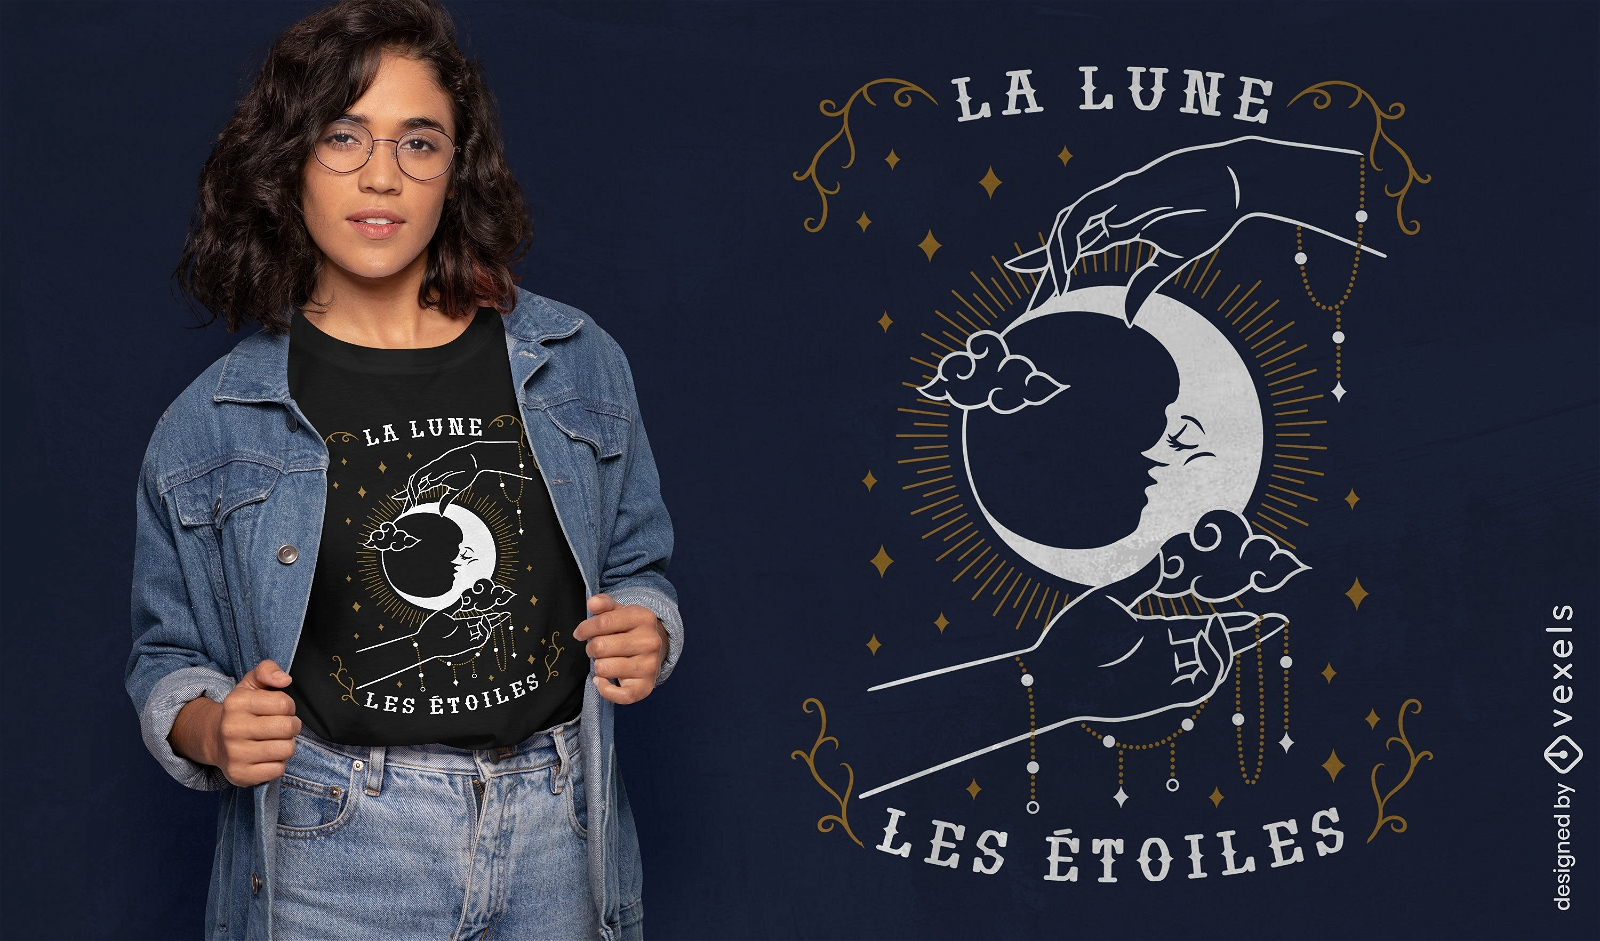 Der Mond die Sterne Franz?sisches esoterisches T-Shirt-Design